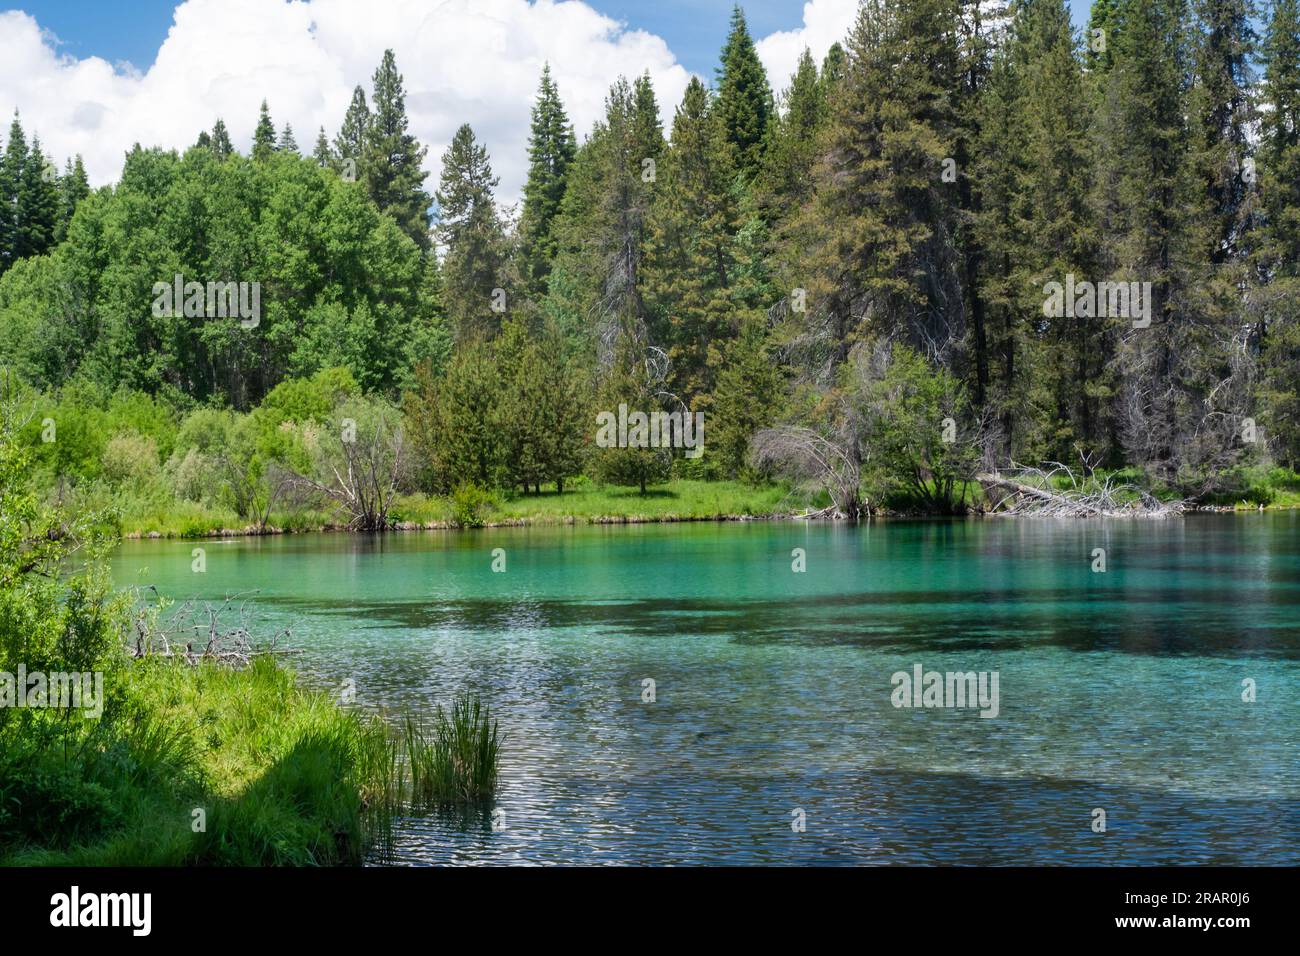 Wunderschöner See aus blauem, kristallklarem Wasser, umgeben von Wäldern im Kimball State Park in Oregon. Stockfoto